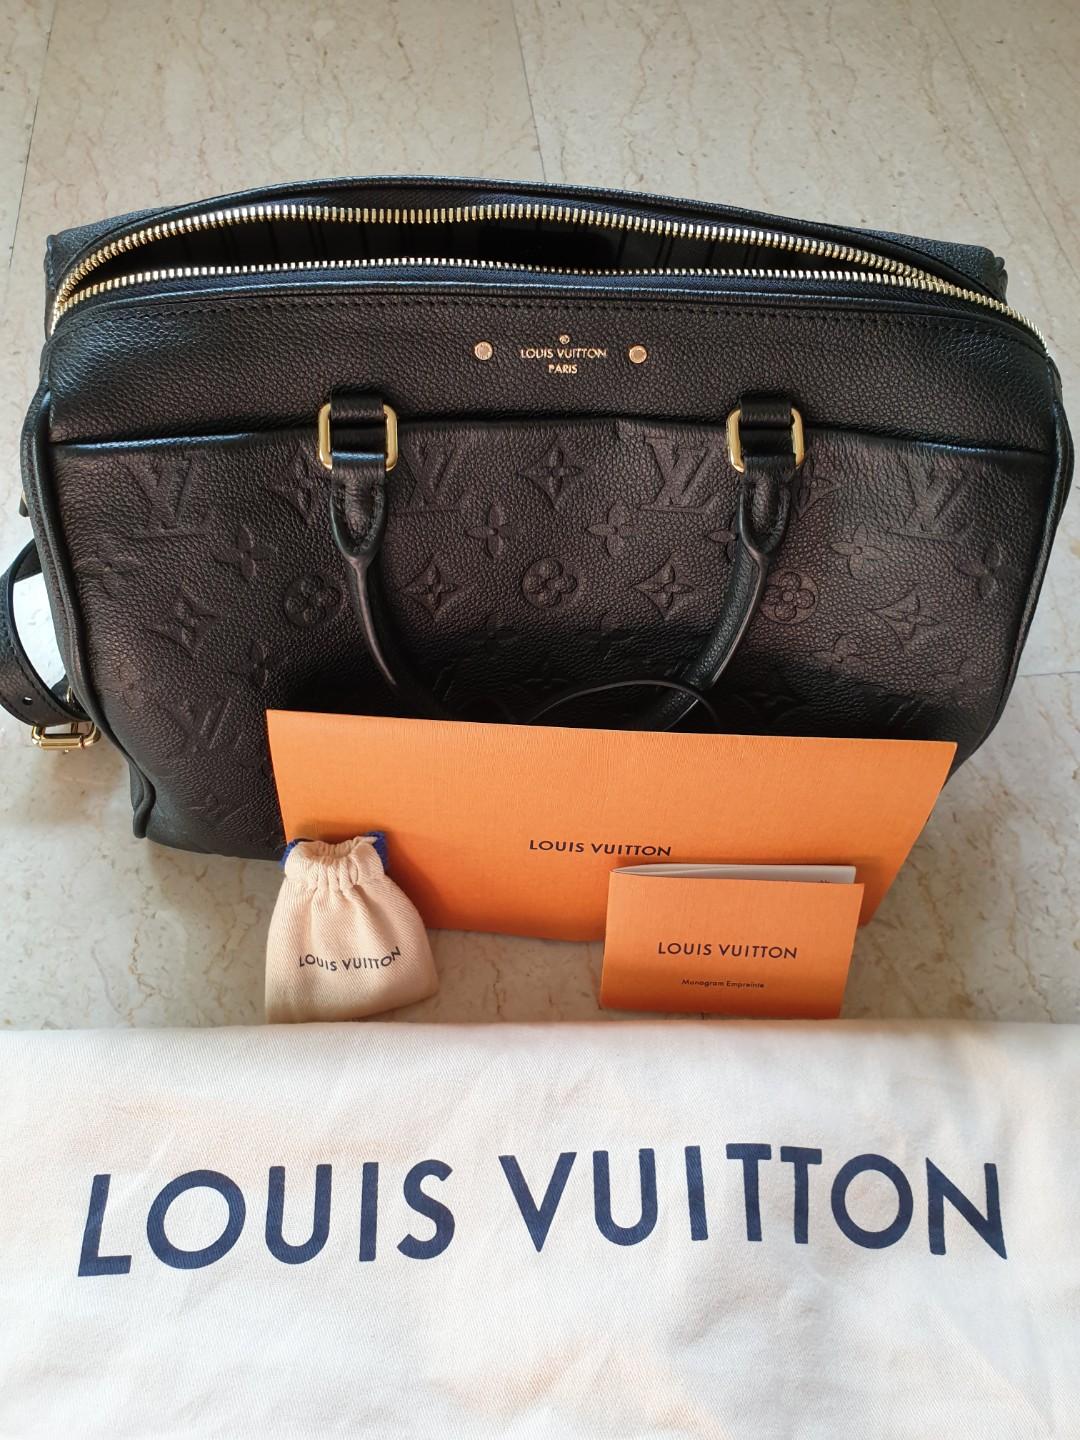 Louis Vuitton Speedy Bandouliere 25 Monogram Empreinte M40765 Aube